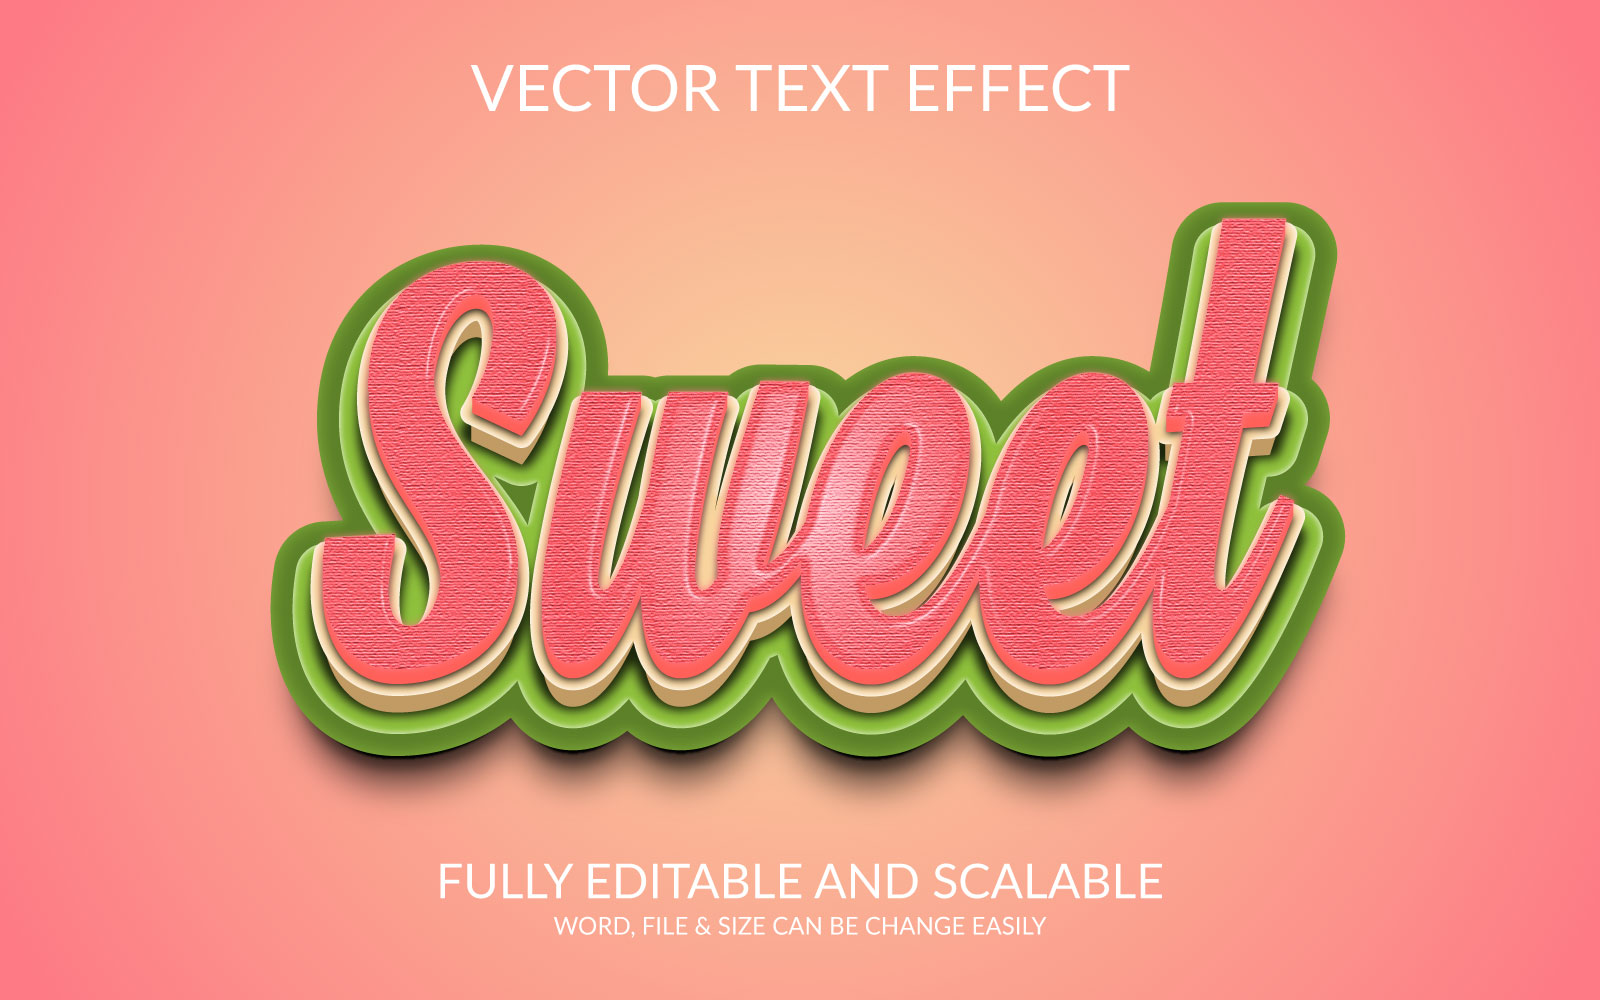 Sweet 3D Vector Eps Text Effect Template Design